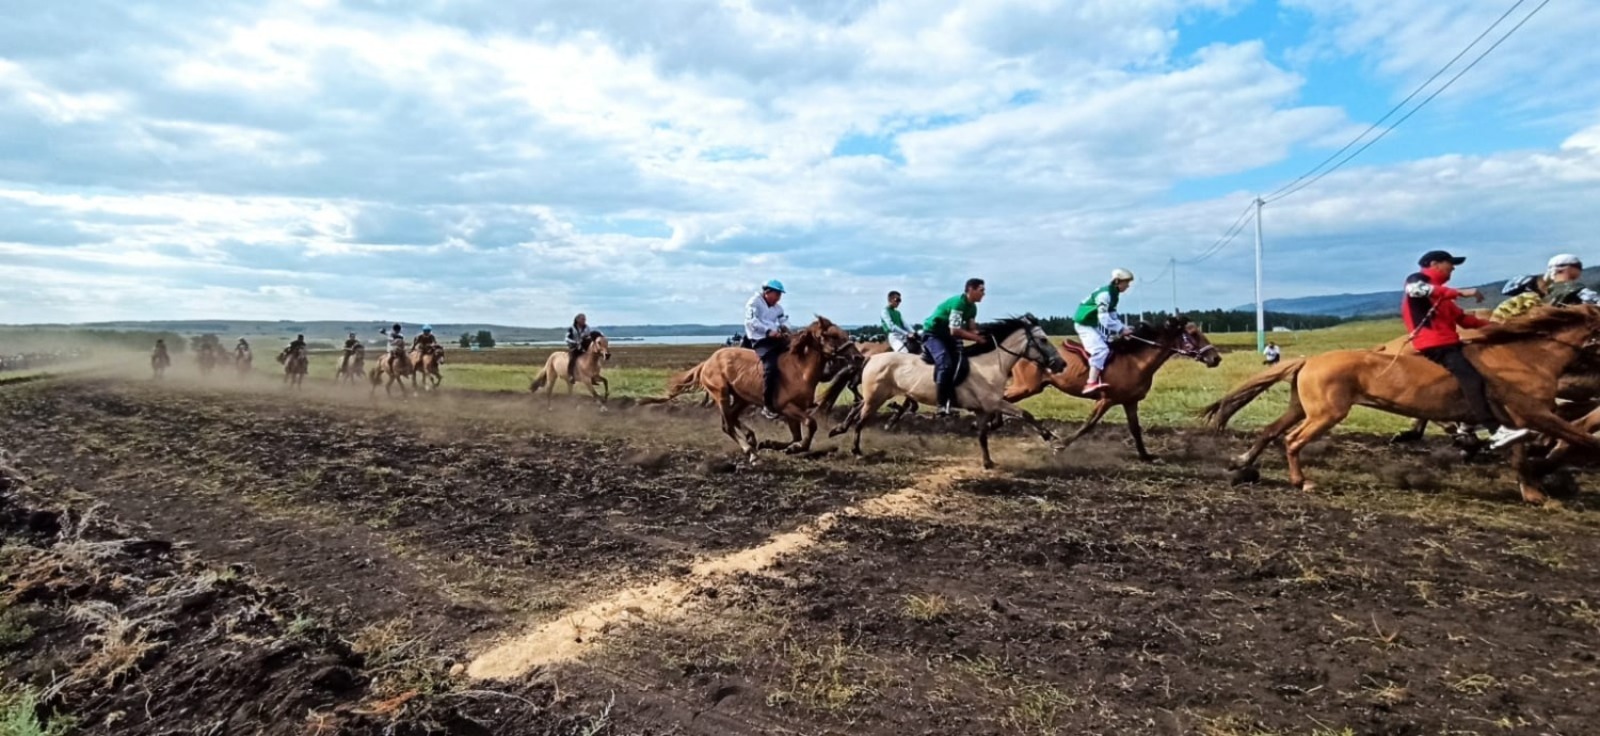 На фестивале башкирской лошади начались финальная игра "Ылак" и скачки